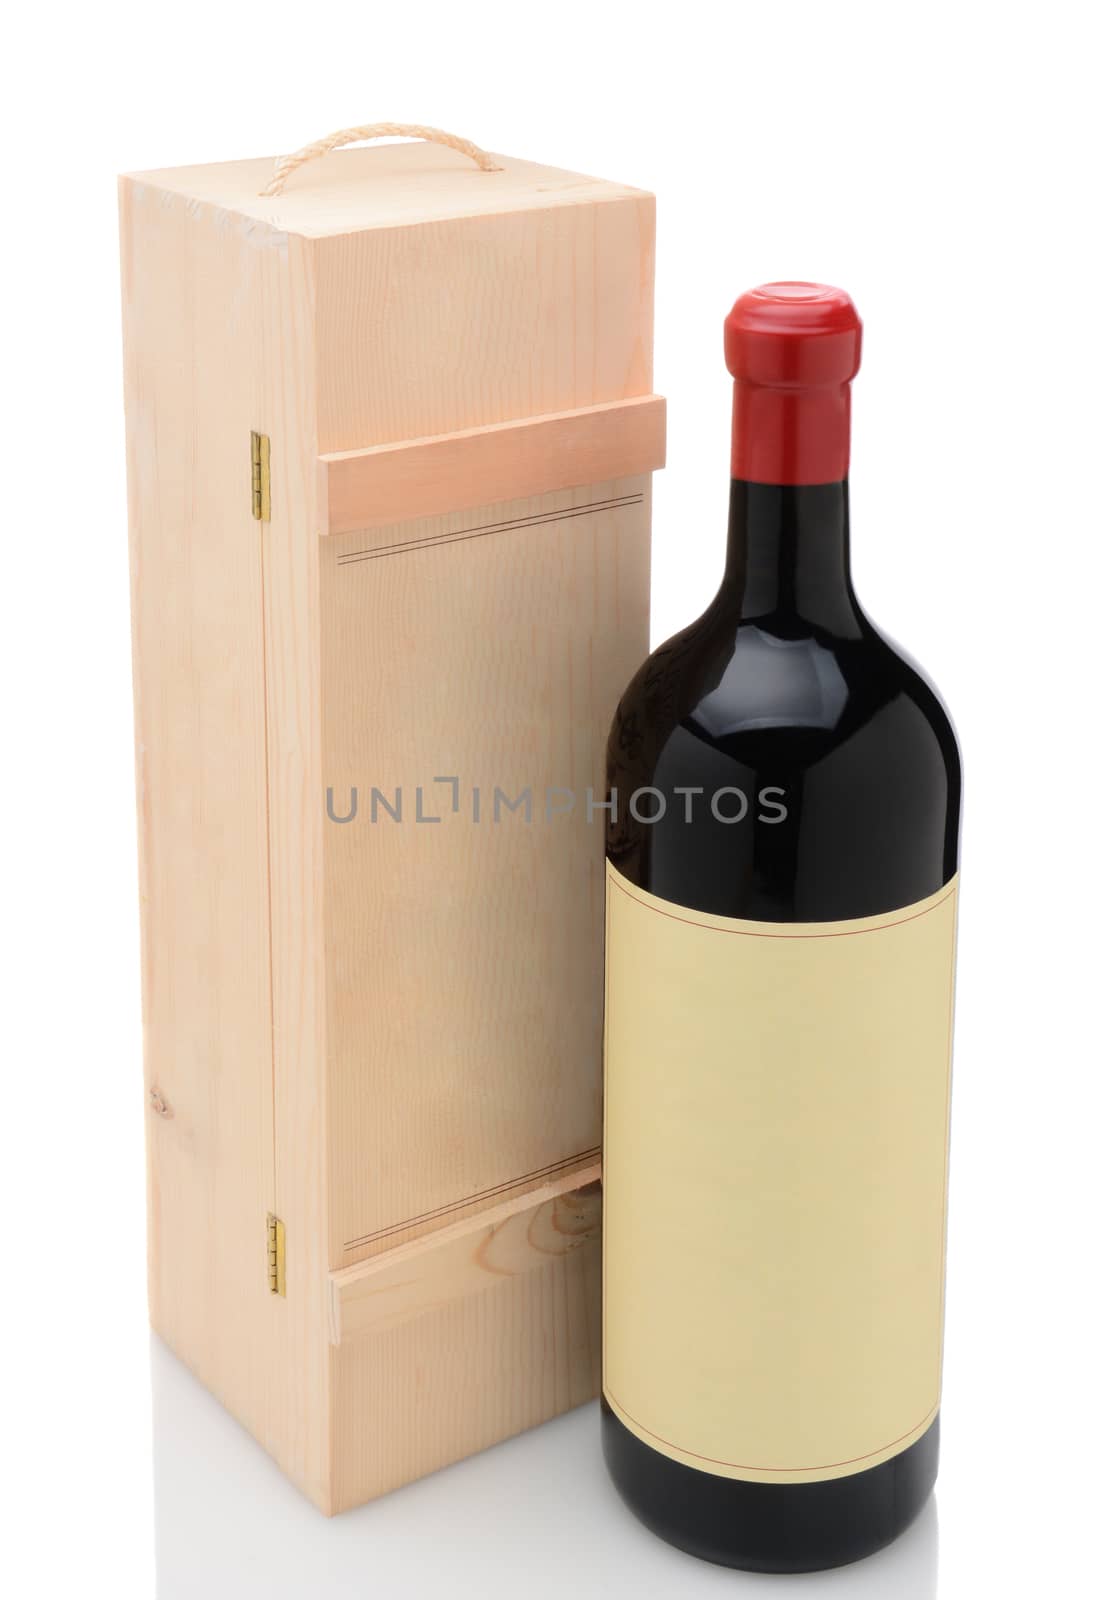 Wien Bottle and Wood Box by sCukrov